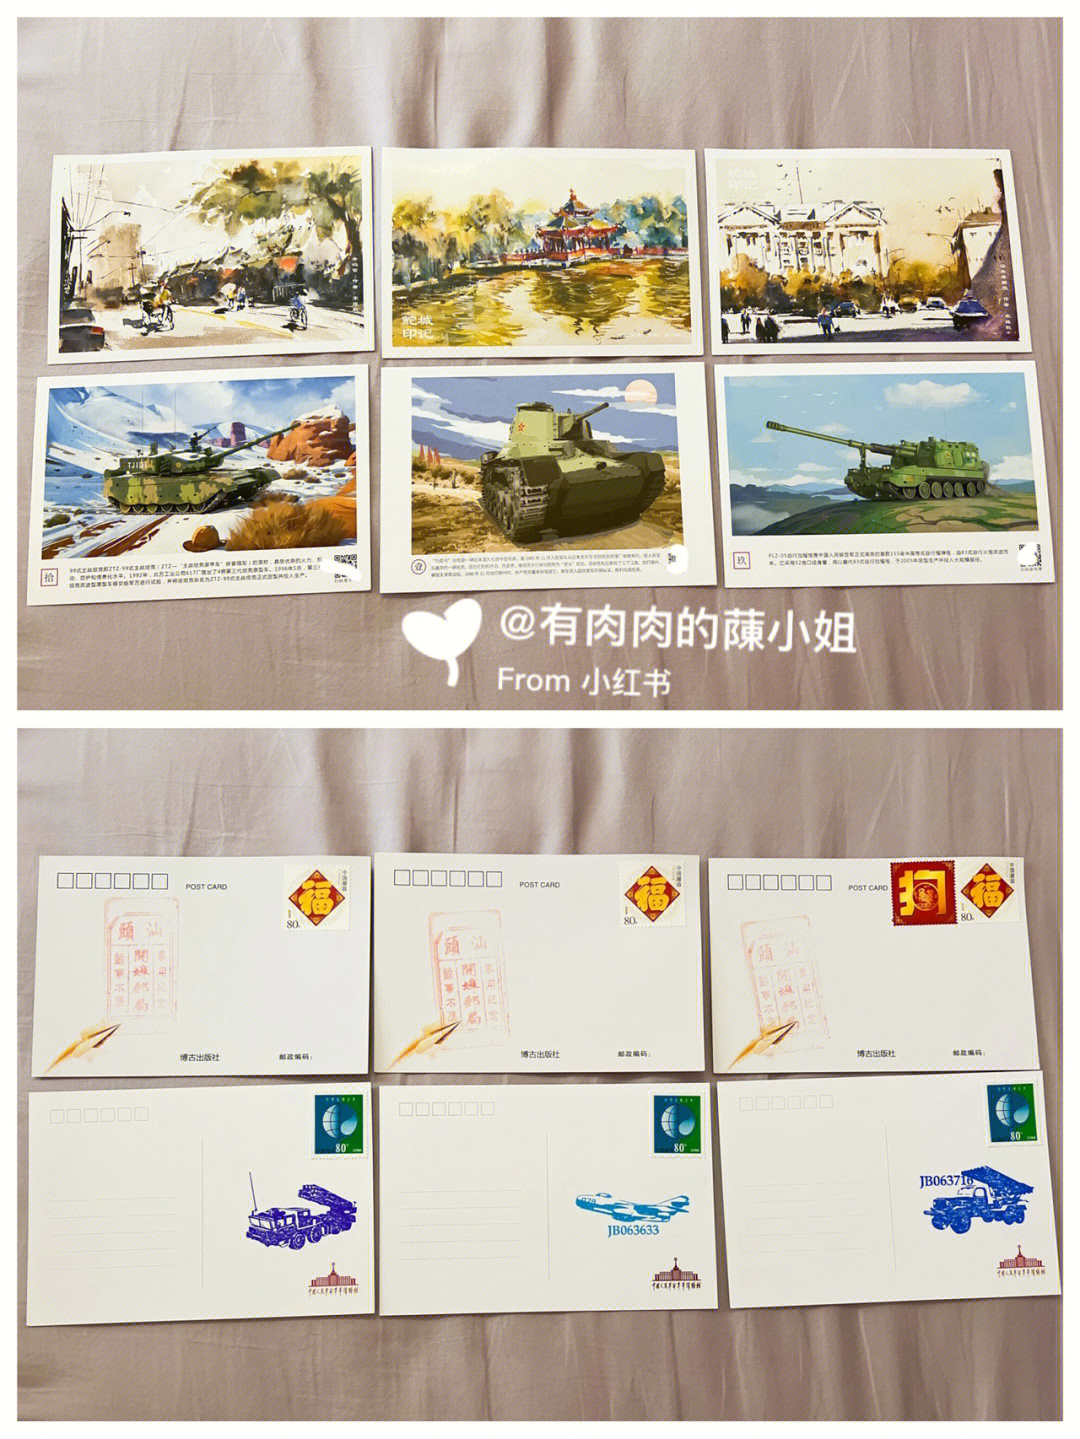 广东汕头,北京军博)手绘明信片啦…9999每一张明信片都有标注名称